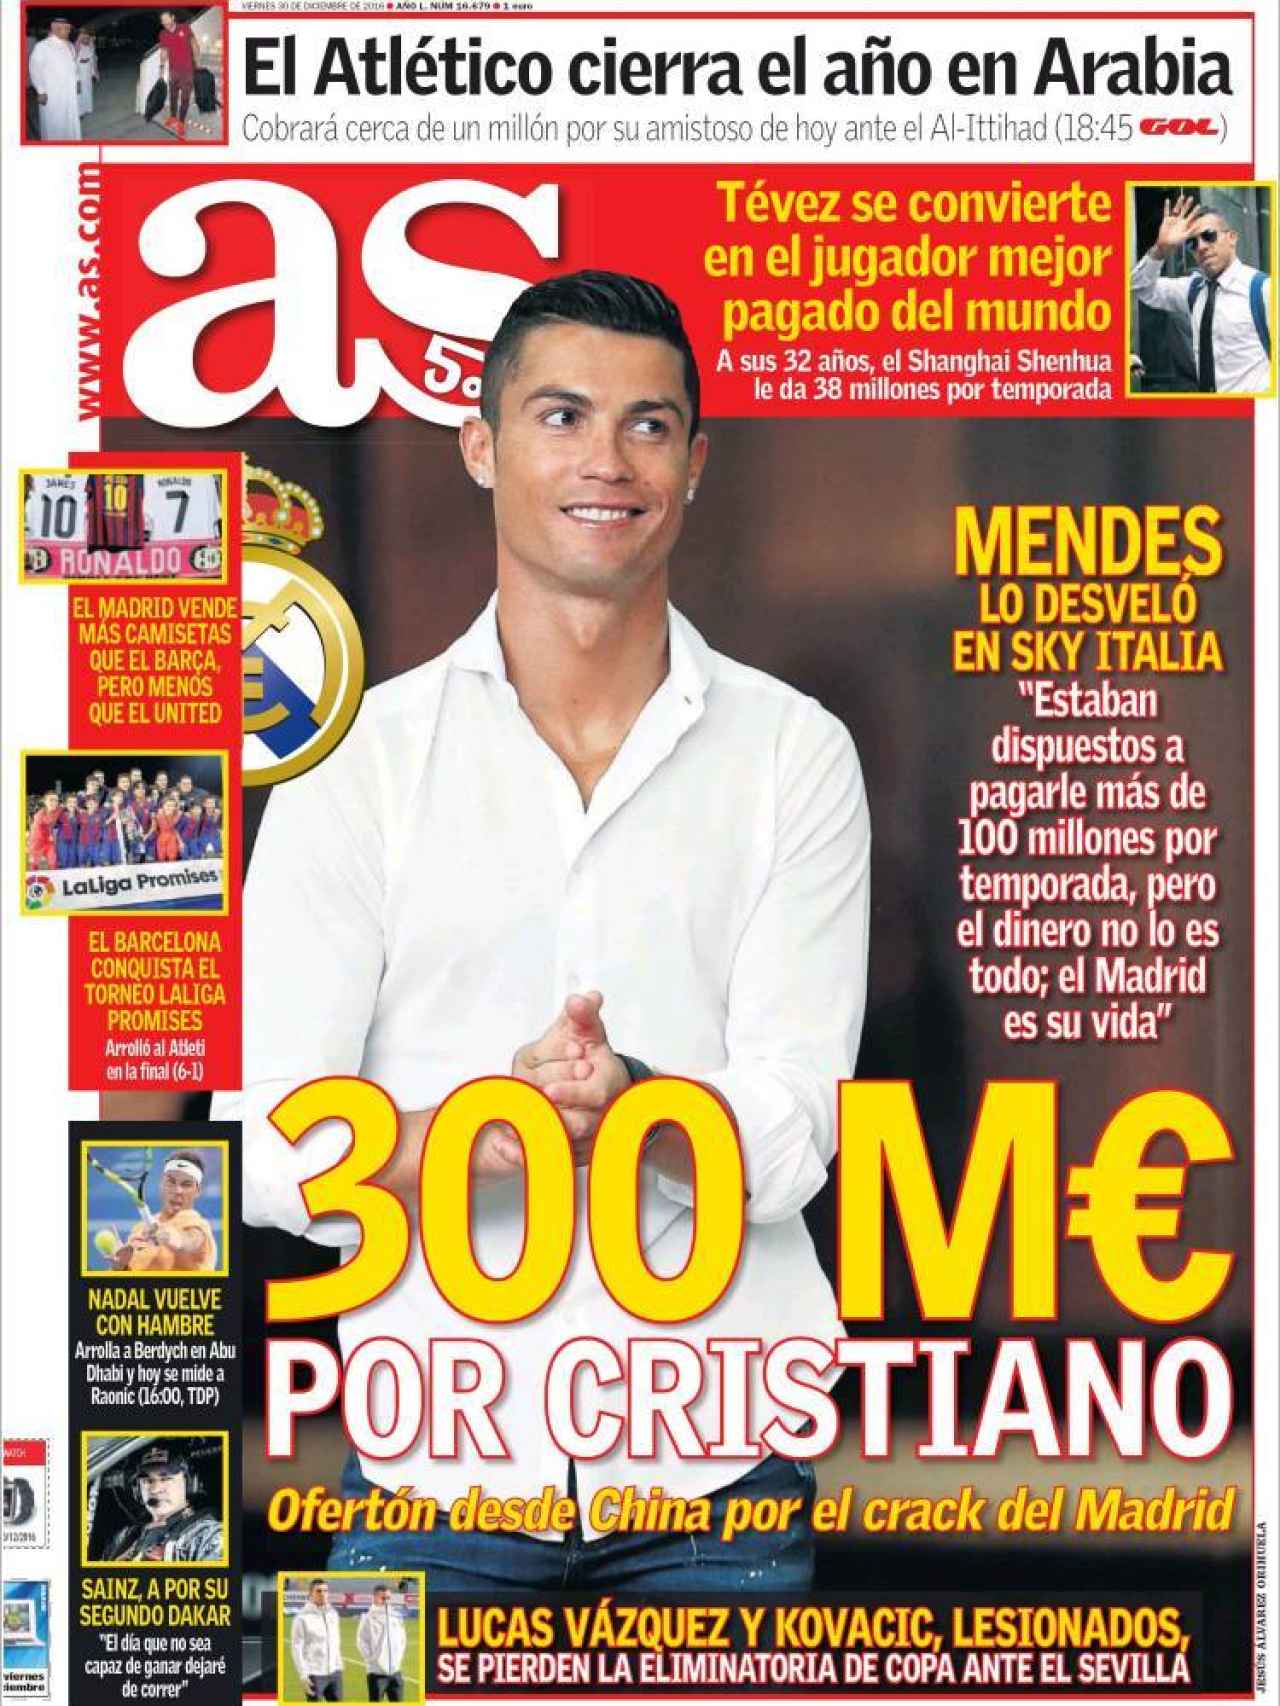 AS desvela la supuesta oferta de 300 millones de euros por Cristiano desde China.